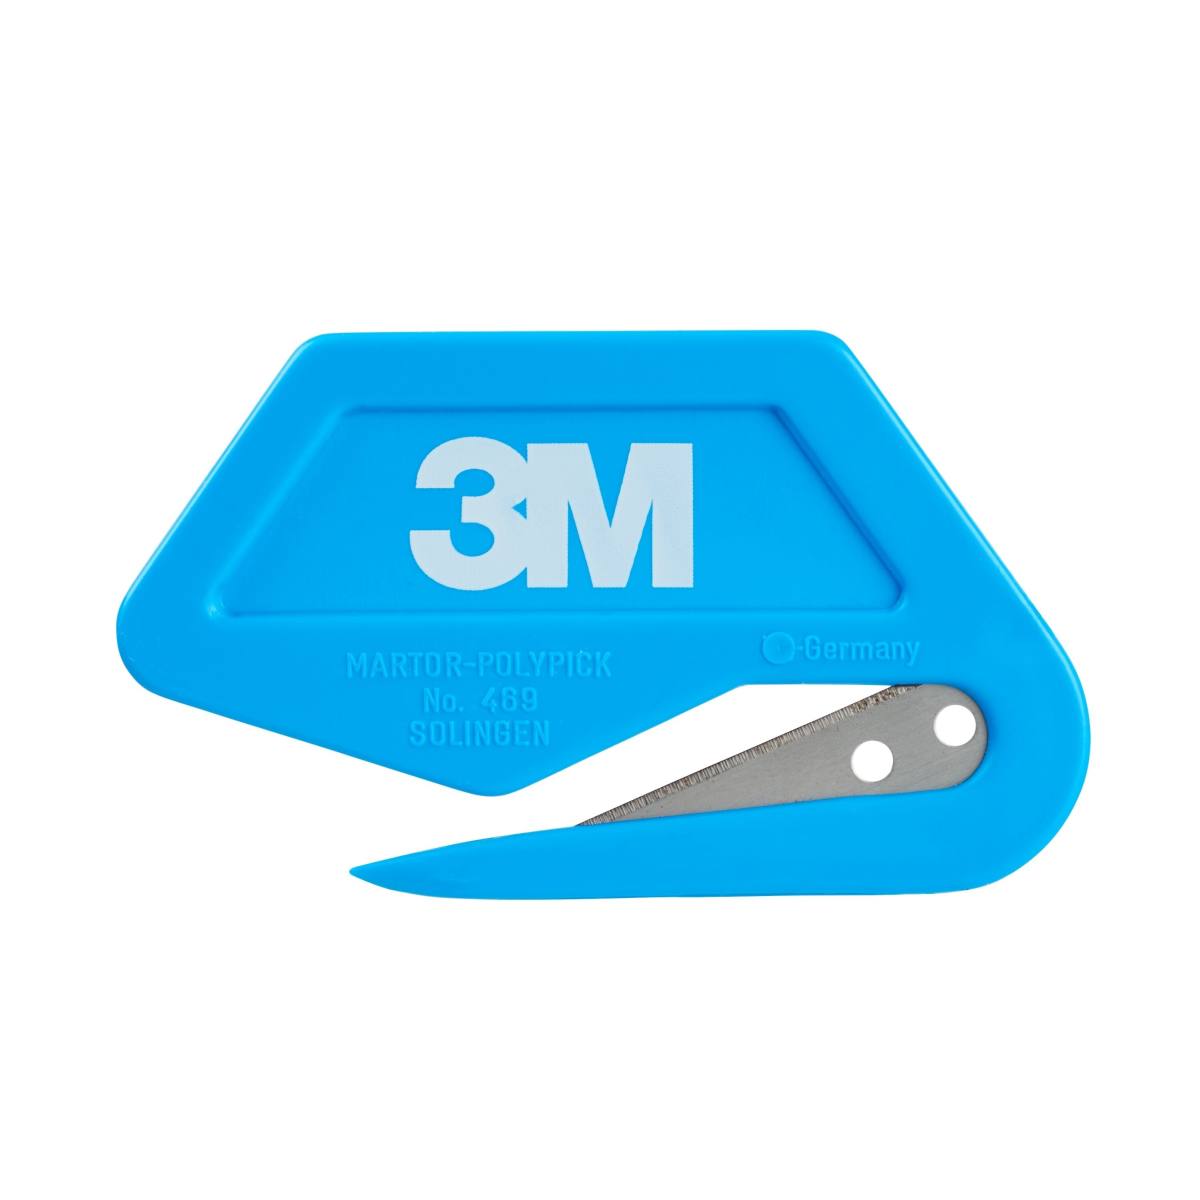 3M Blade for transparent cover film standard, blue